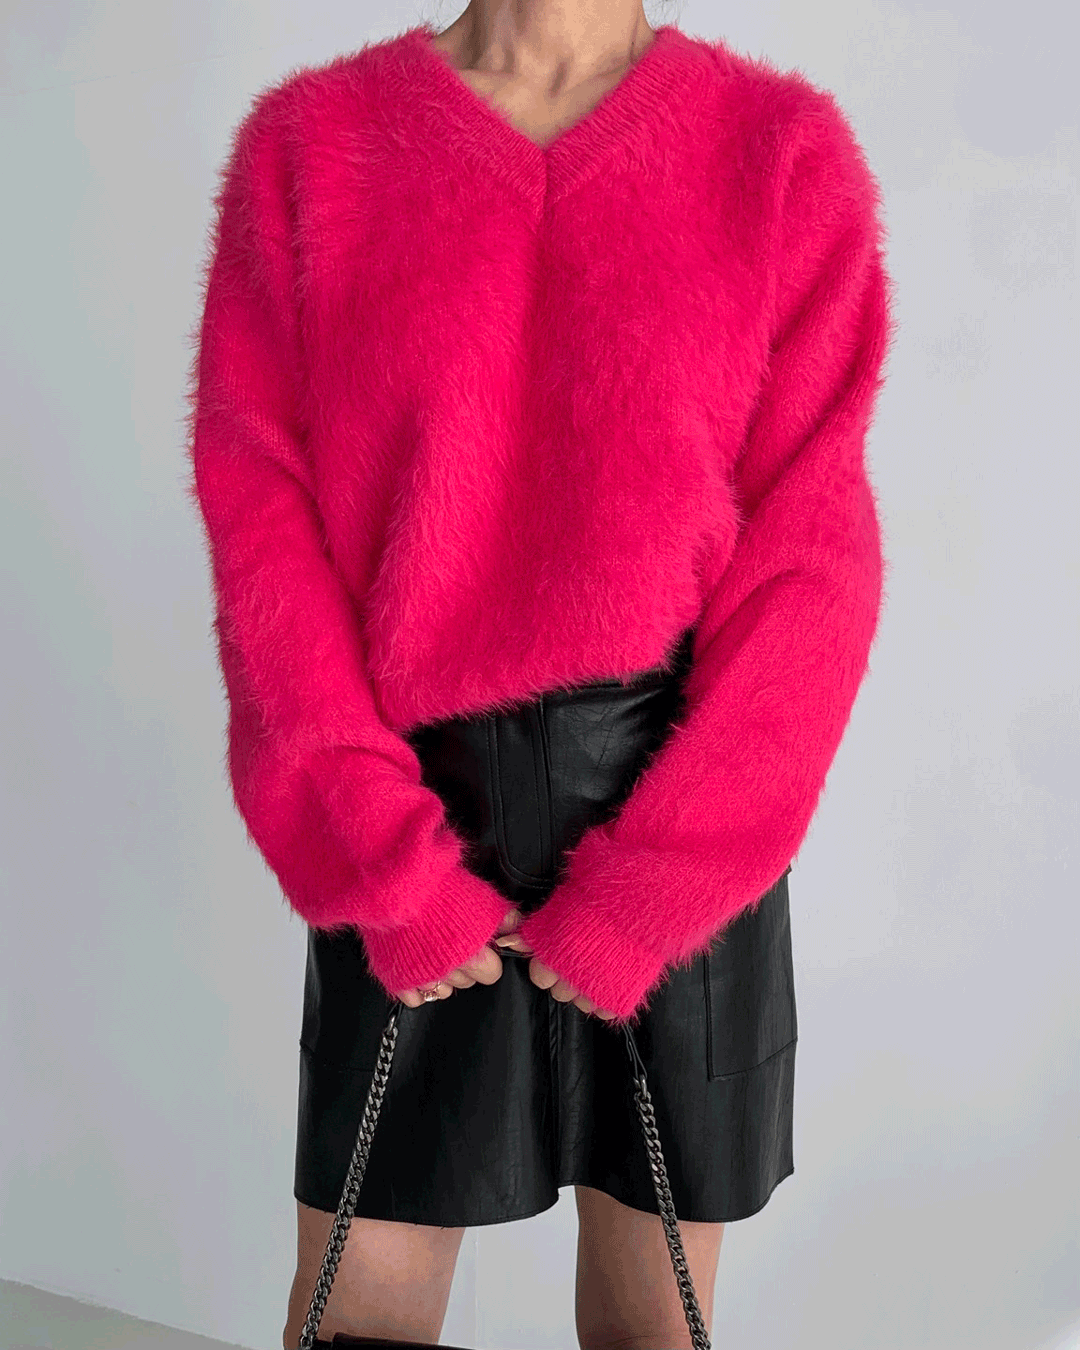 루 앙고라 브이넥 스웨터 (4color)